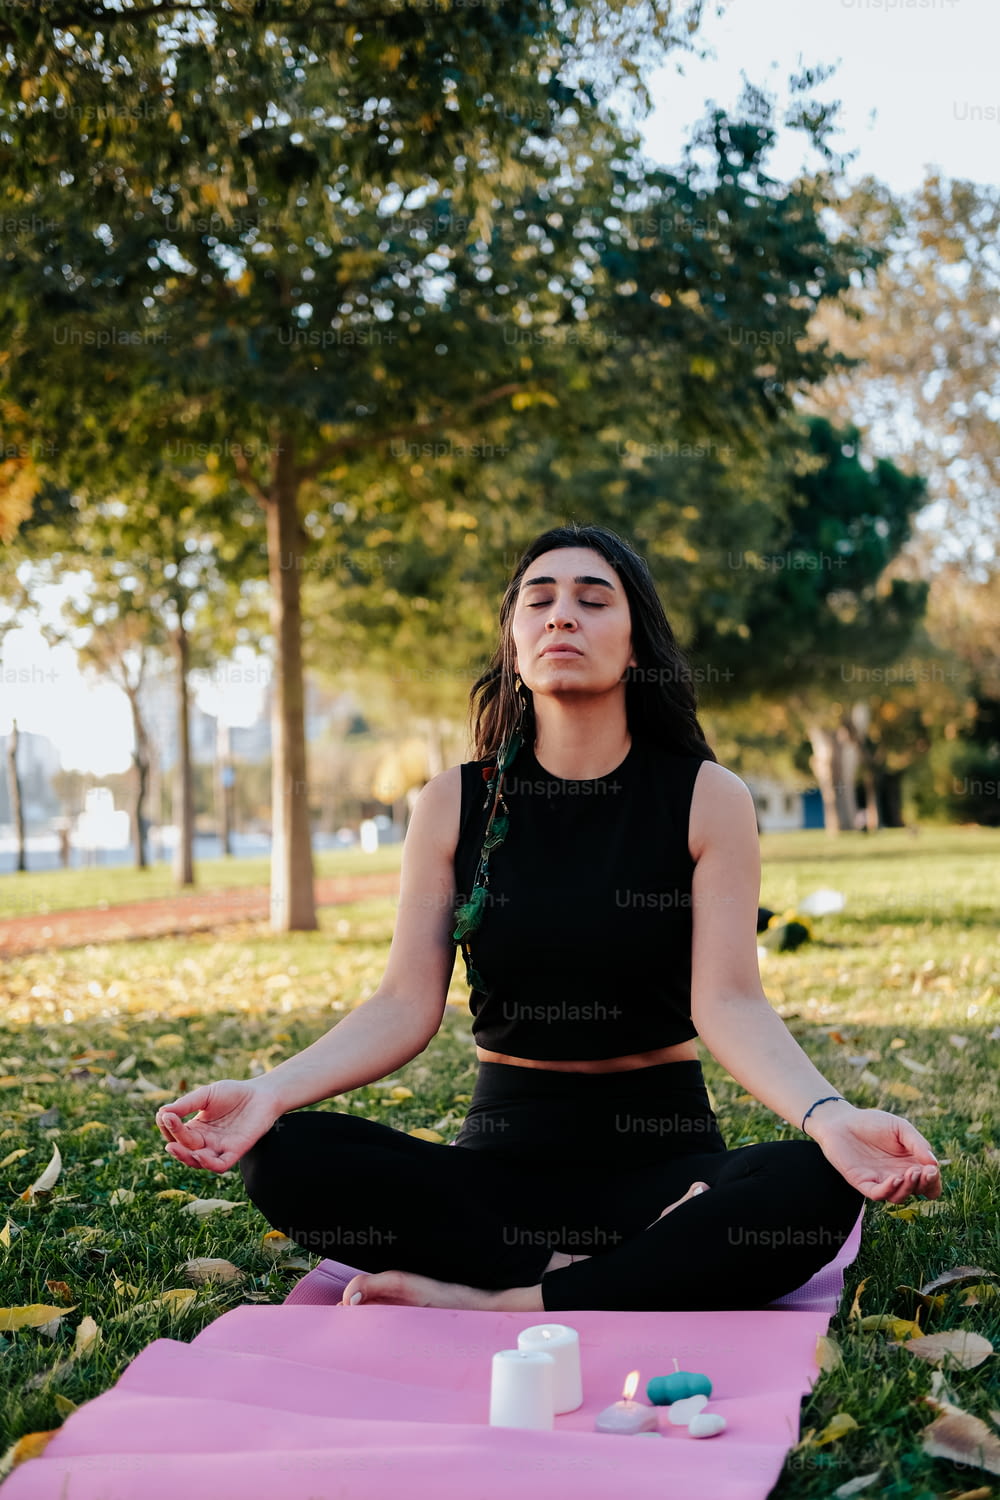 Una mujer sentada en una posición de yoga en un parque